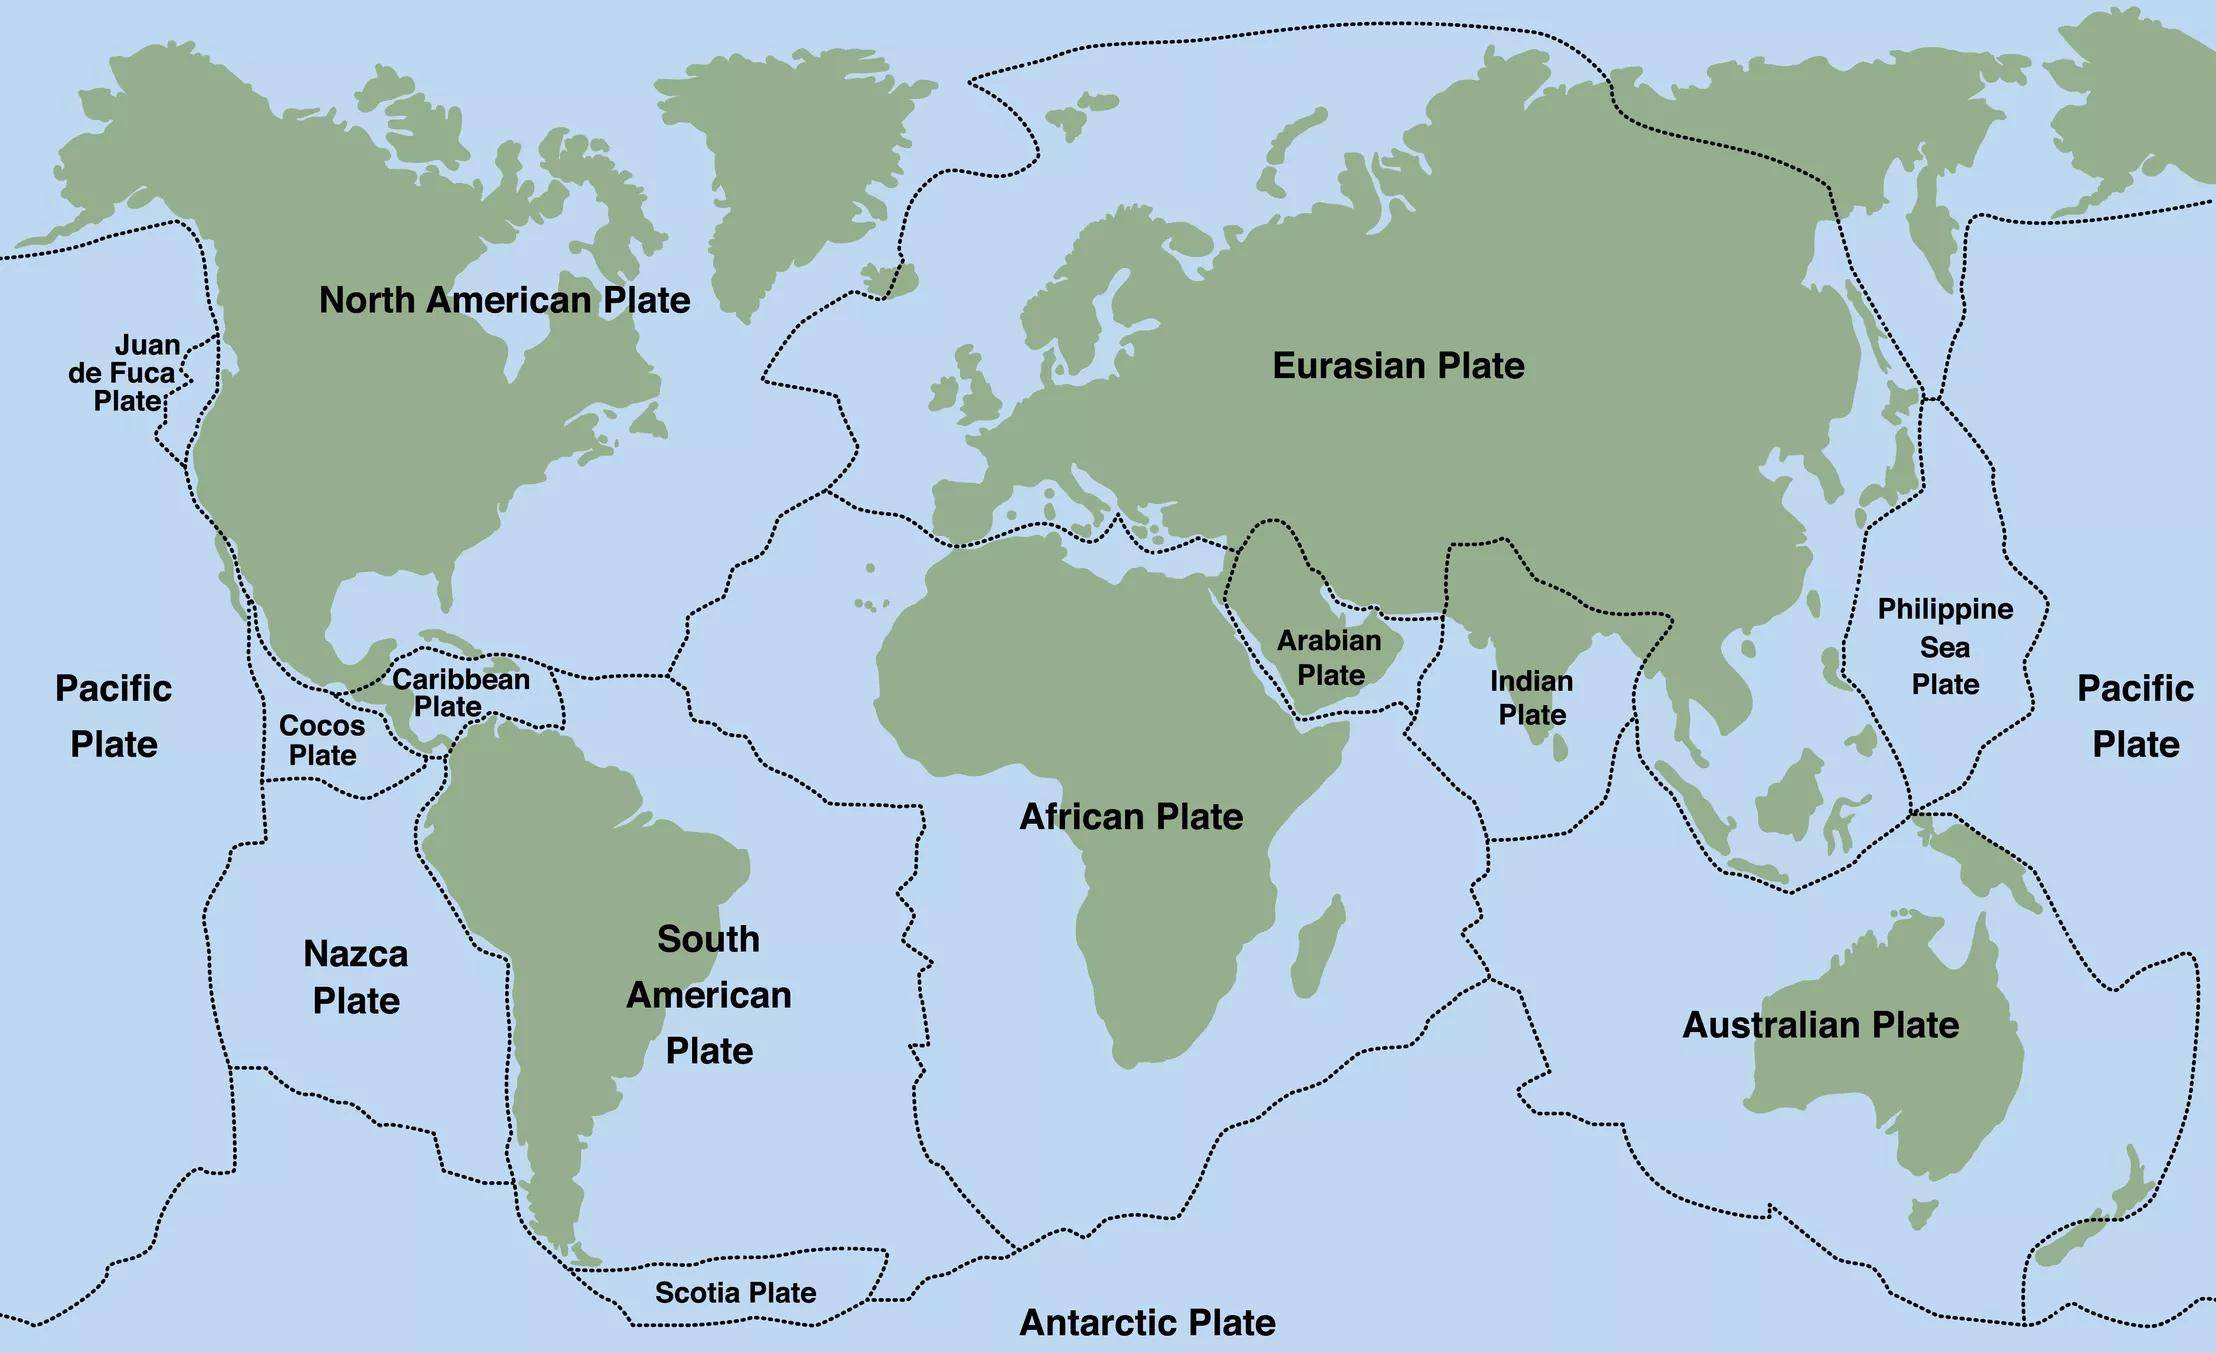 下面的地图显示了世界板块,很明显欧洲和亚洲之间没有地质边界